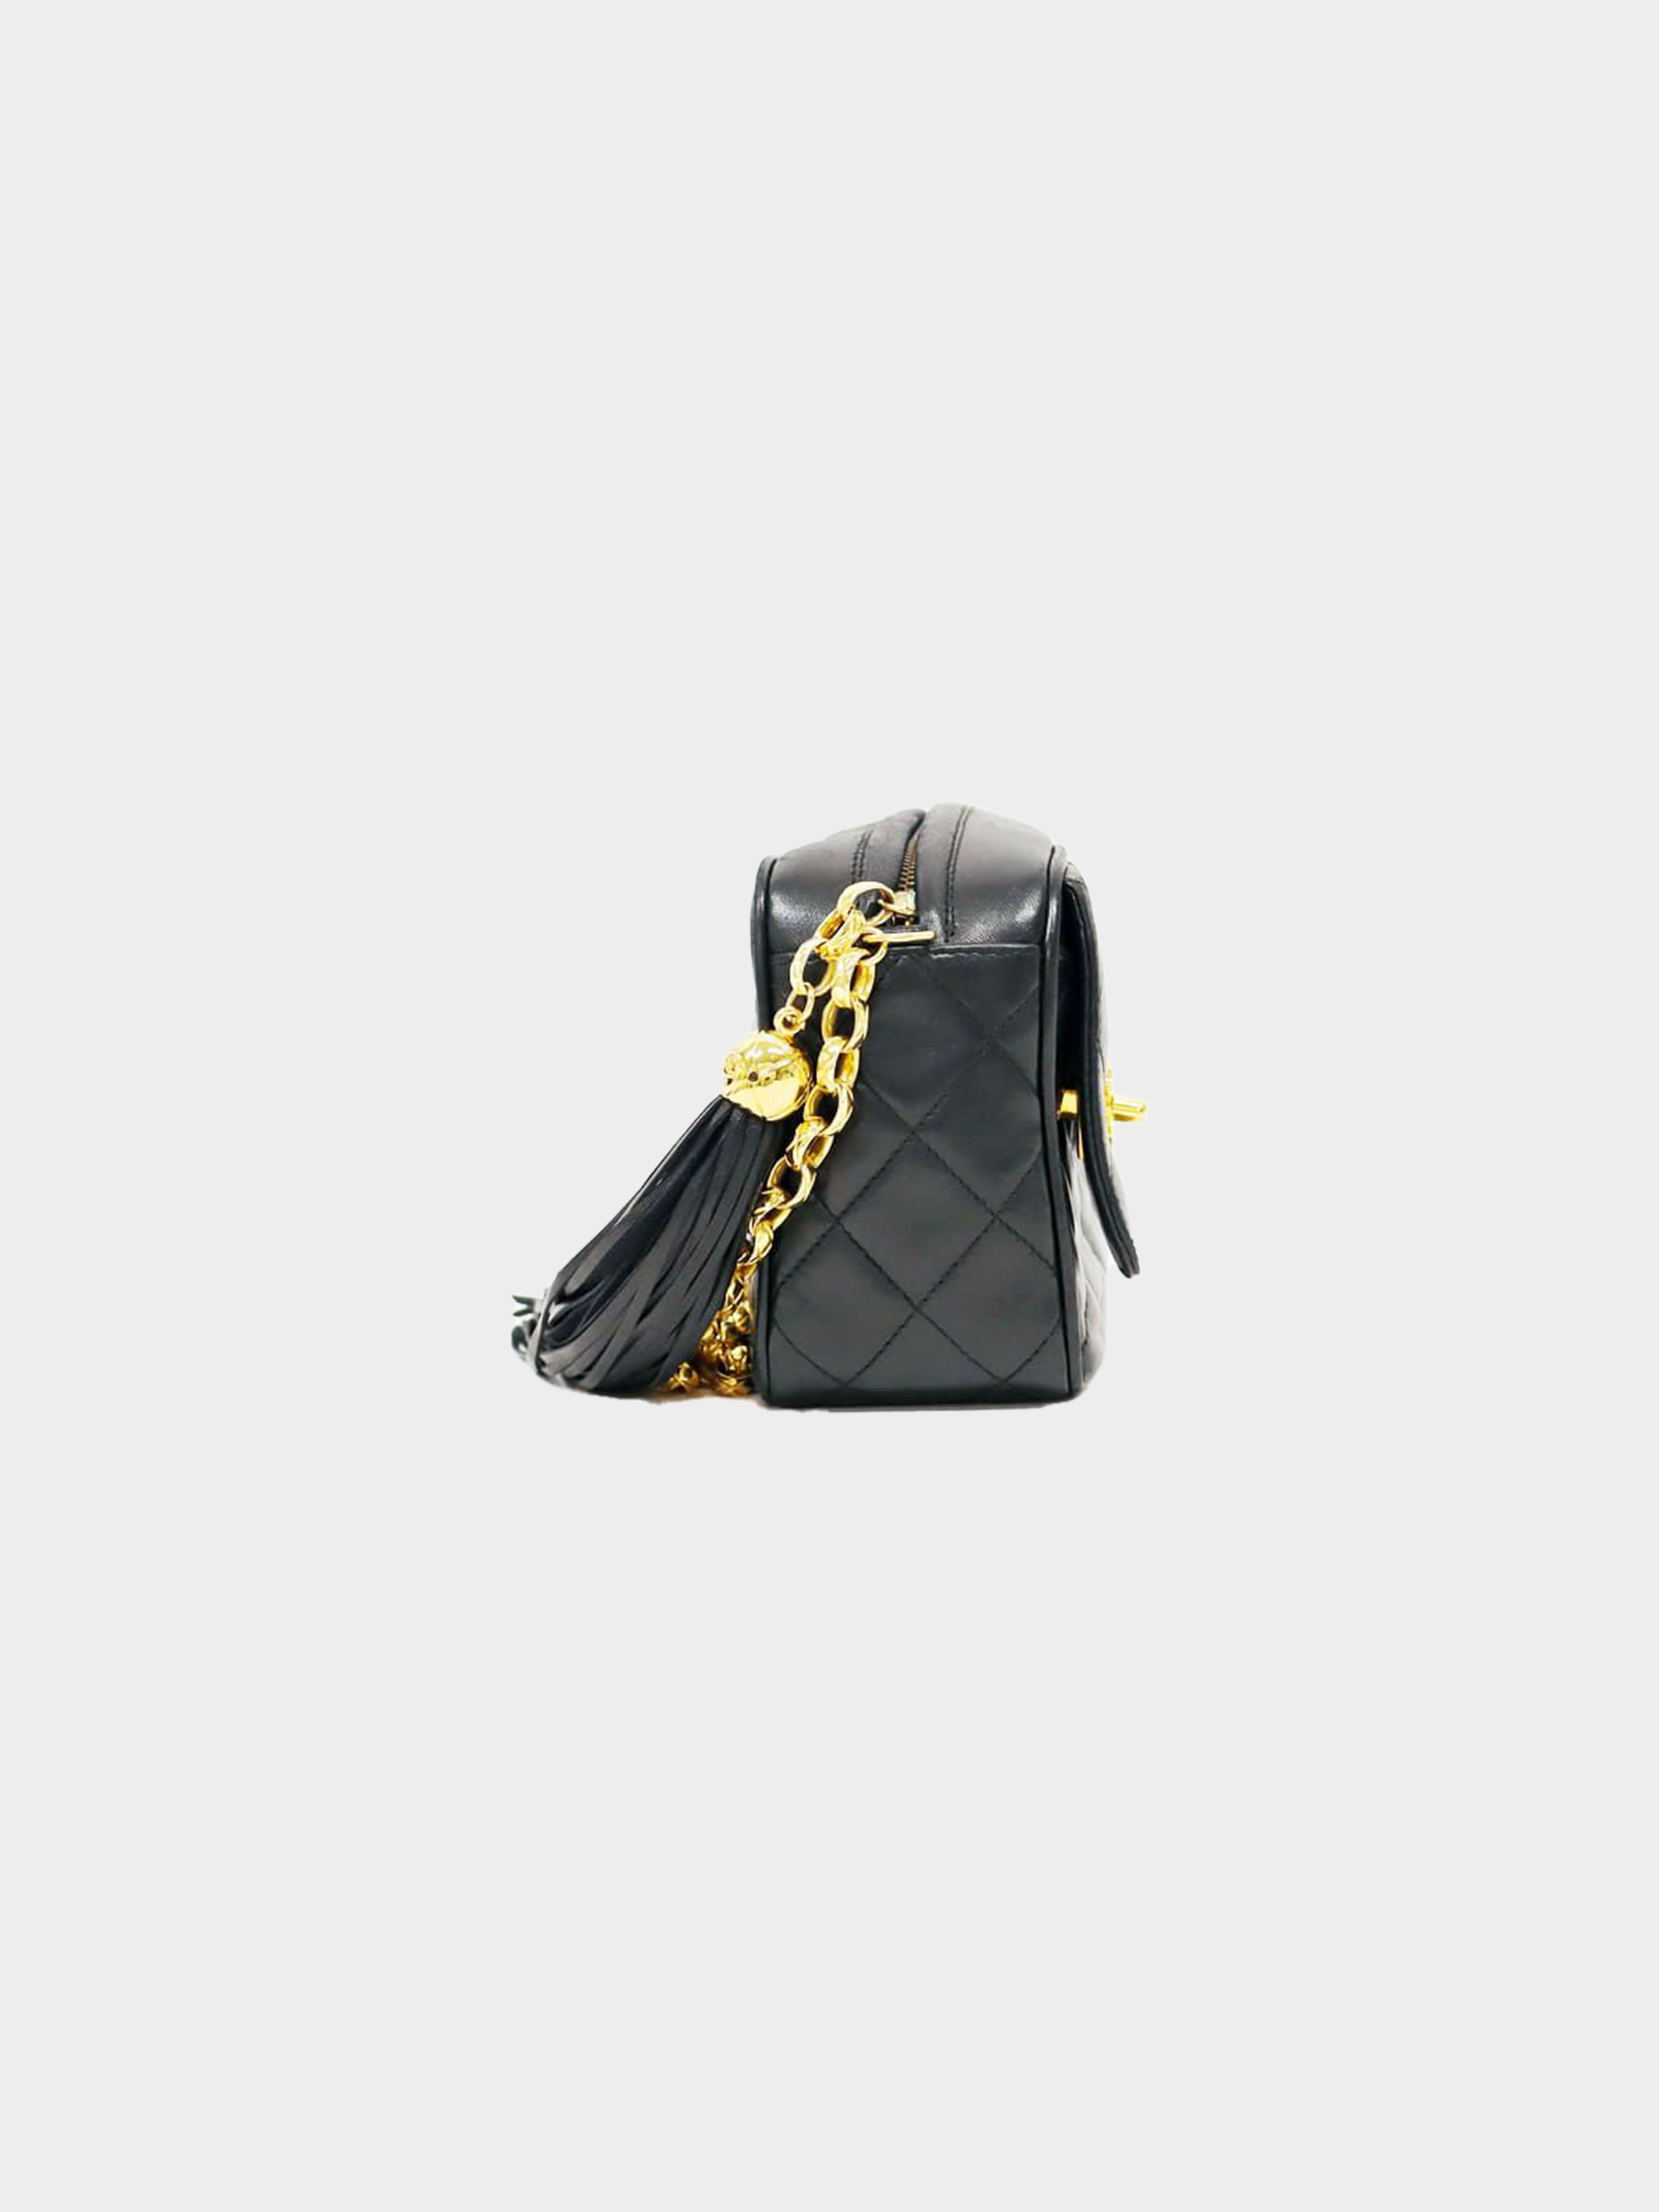 Vintage Chanel Single Flap Bag with Tassel - Black